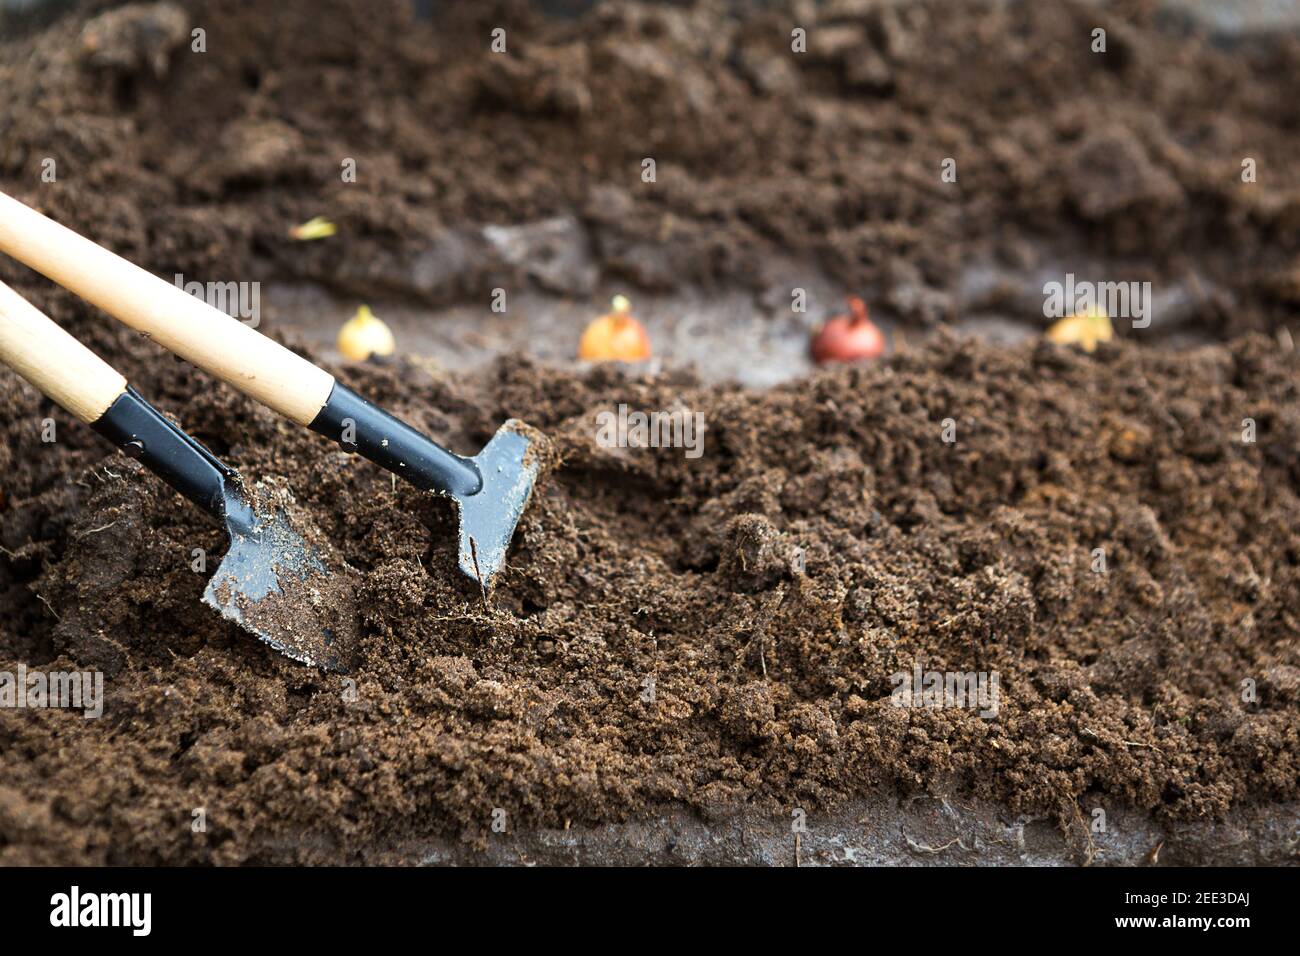 Le râteau et une pelle sont insérés dans le sol depuis le jardin, l'ensemencement d'oignon est planté. Printemps, travail sur une parcelle de terrain, aménagement paysager, garde Banque D'Images